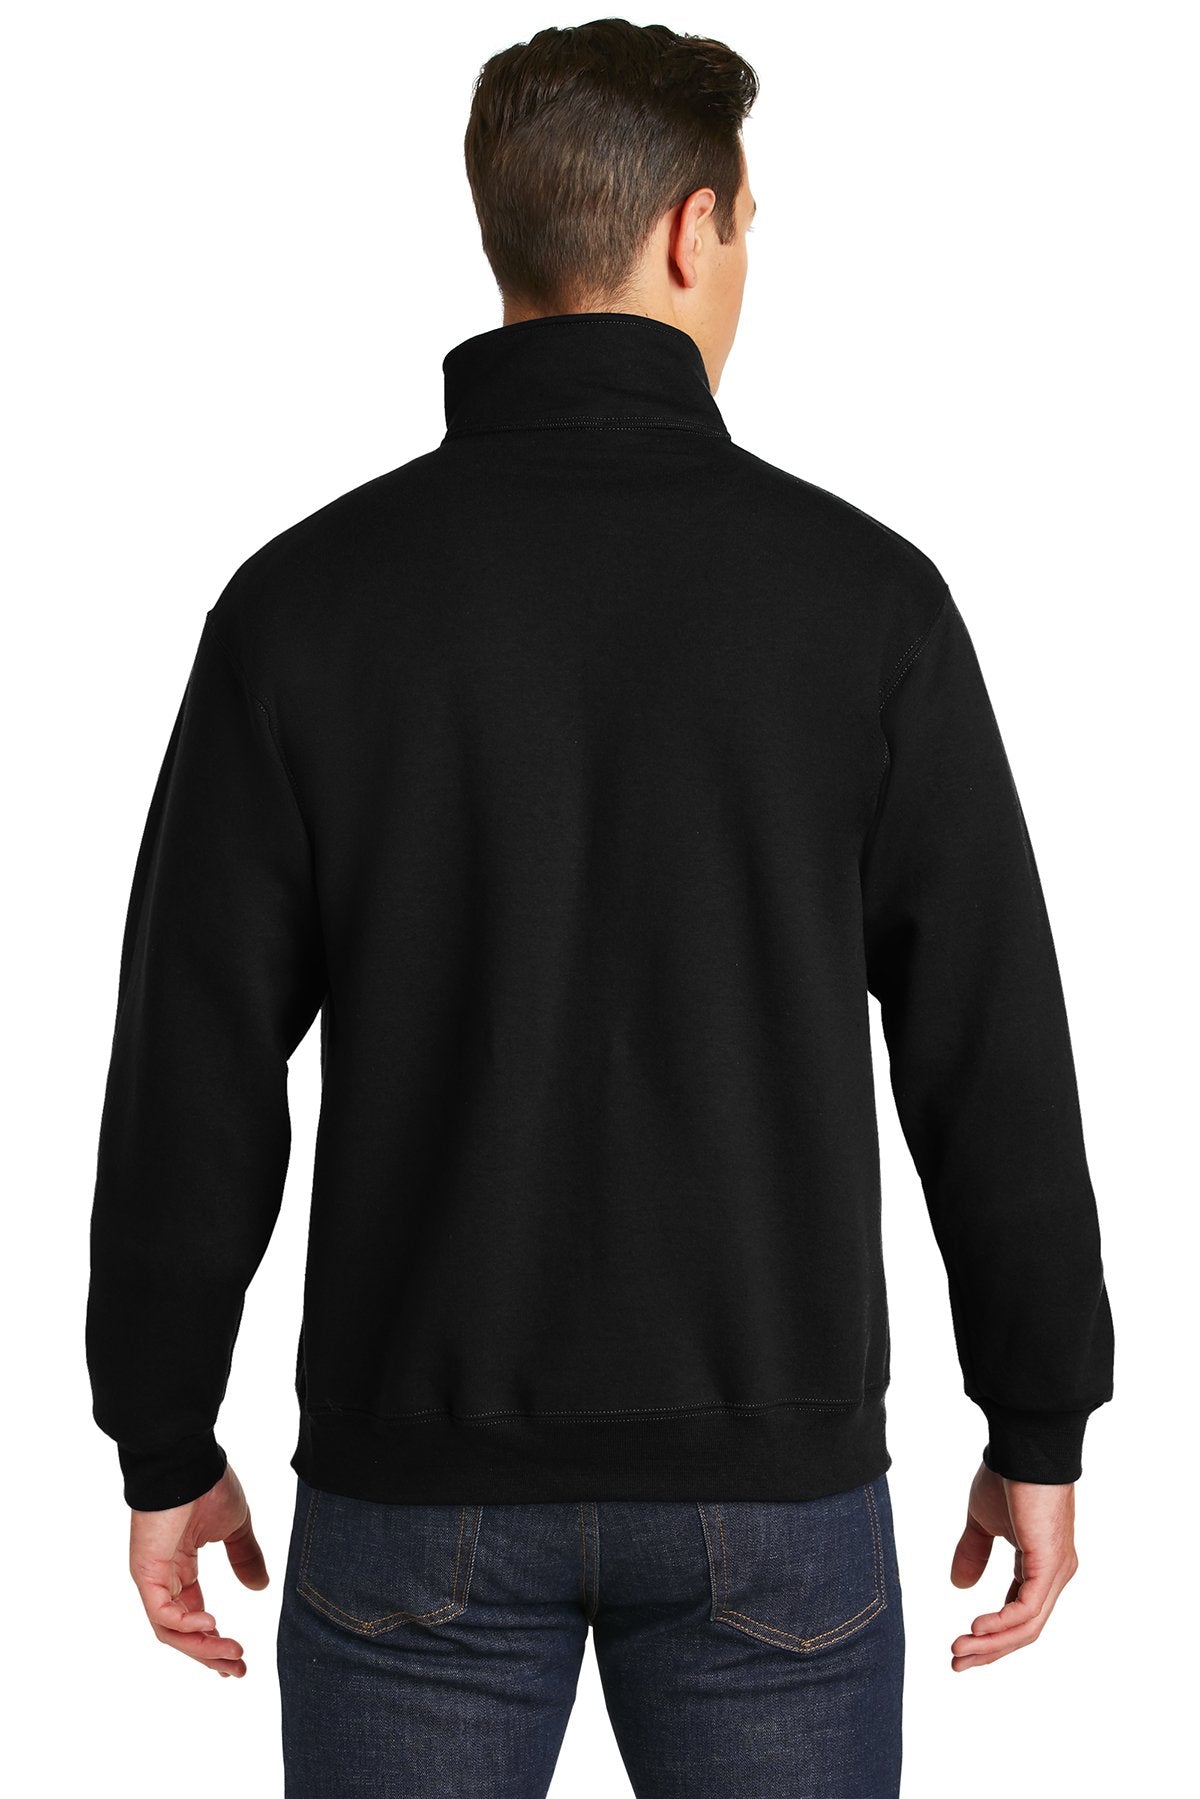 Jerzees Super Sweats NuBlend 1/4-Zip Sweatshirt with Cadet Collar 4528M Black